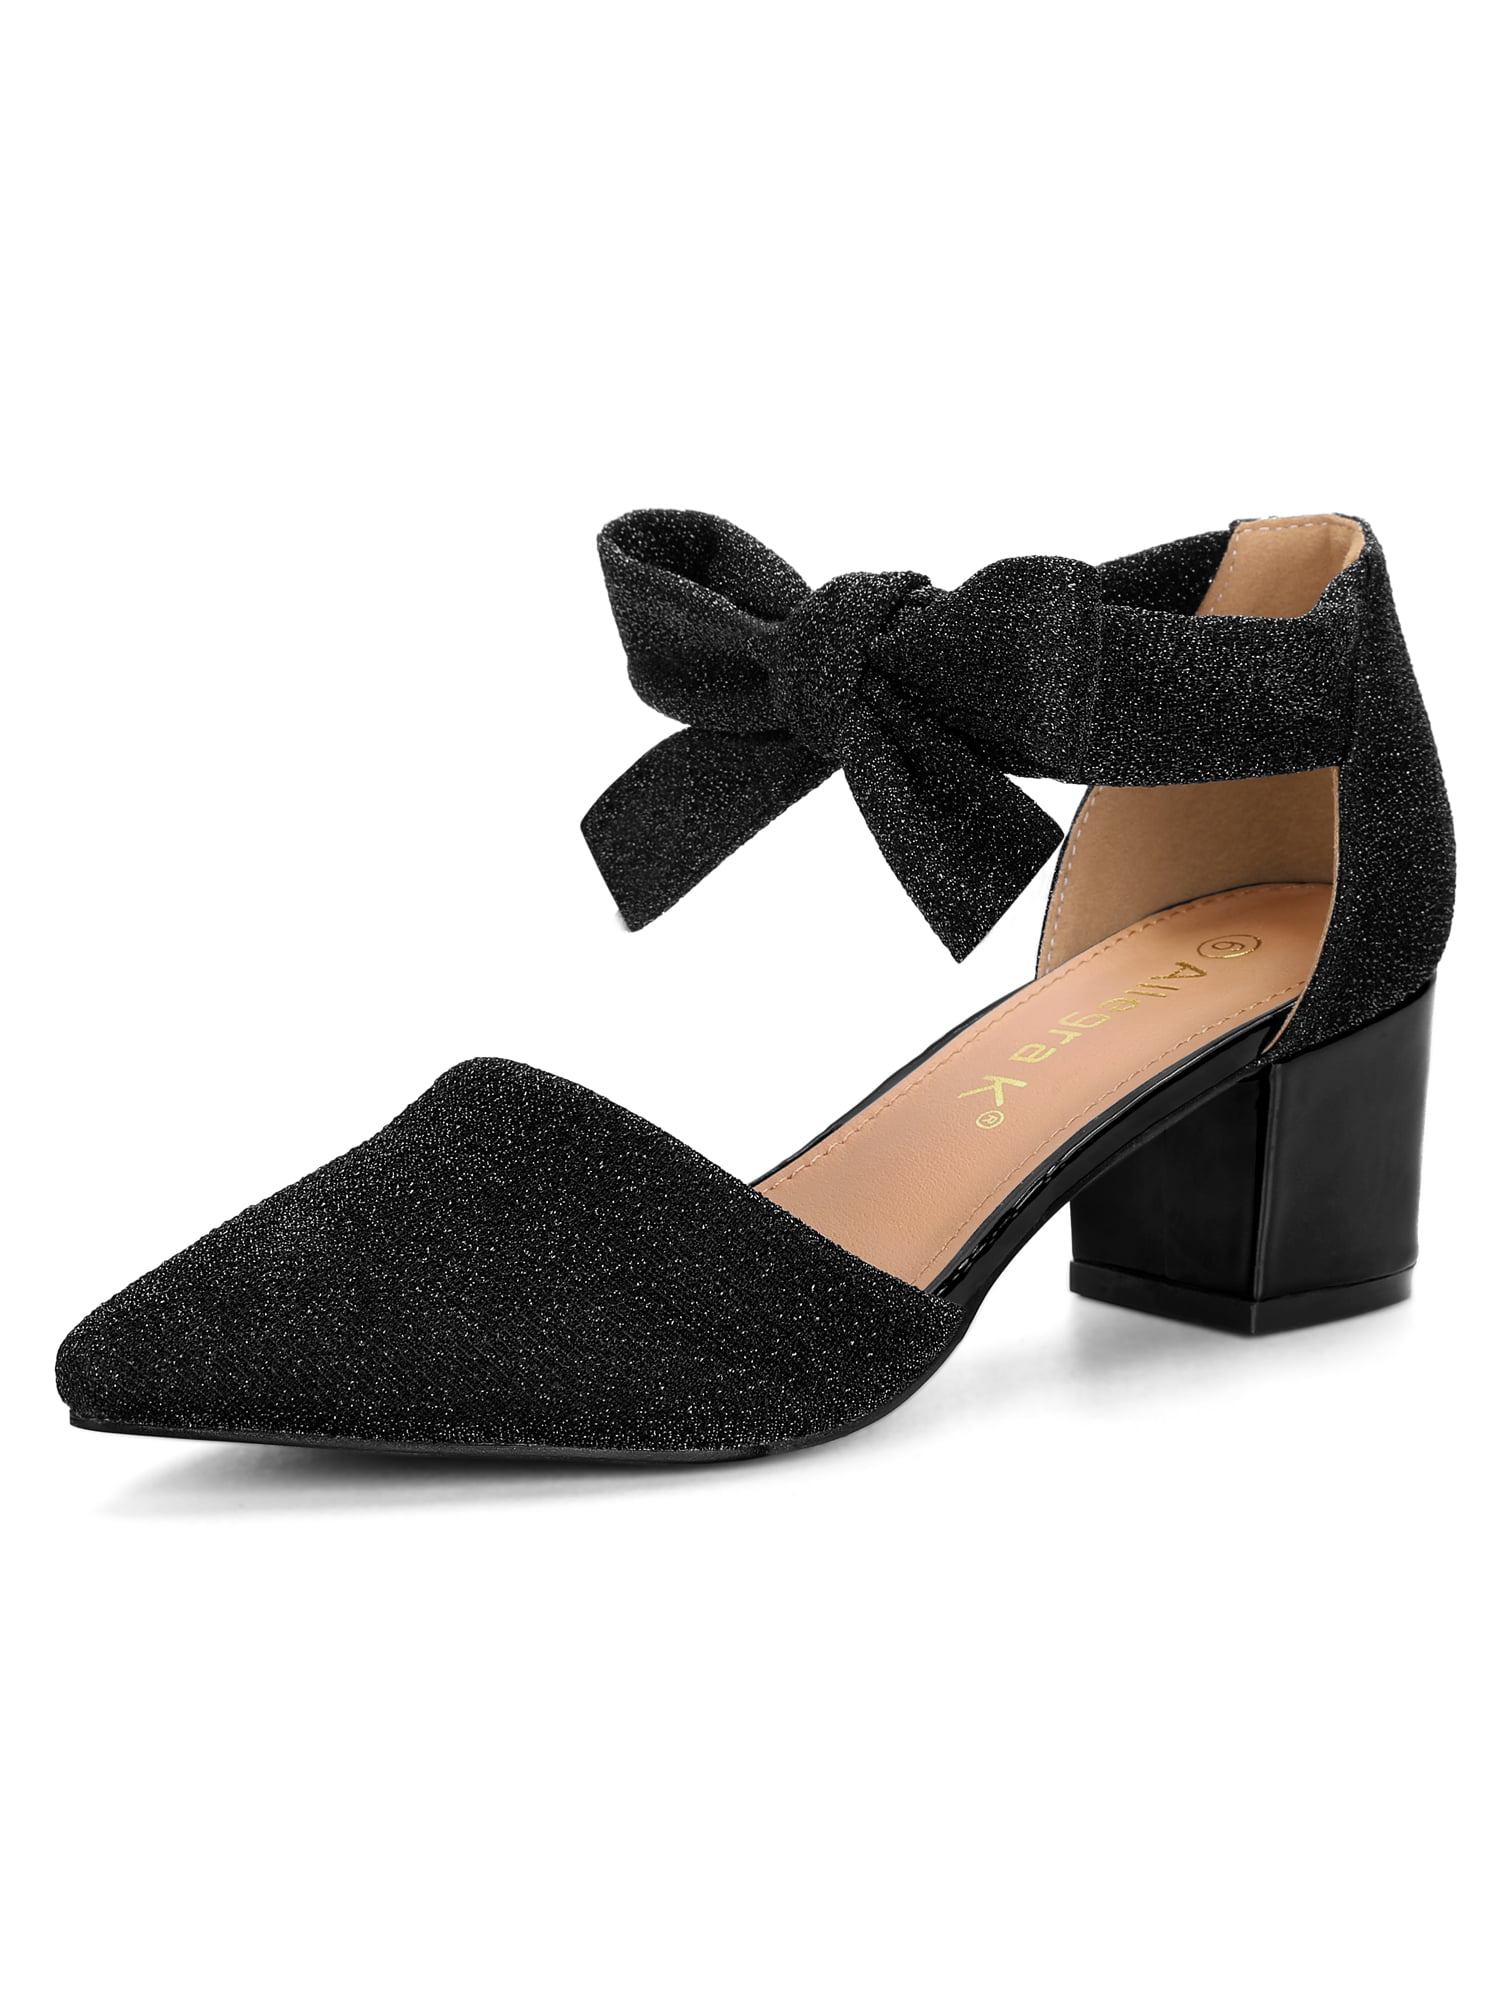 tie up black block heels